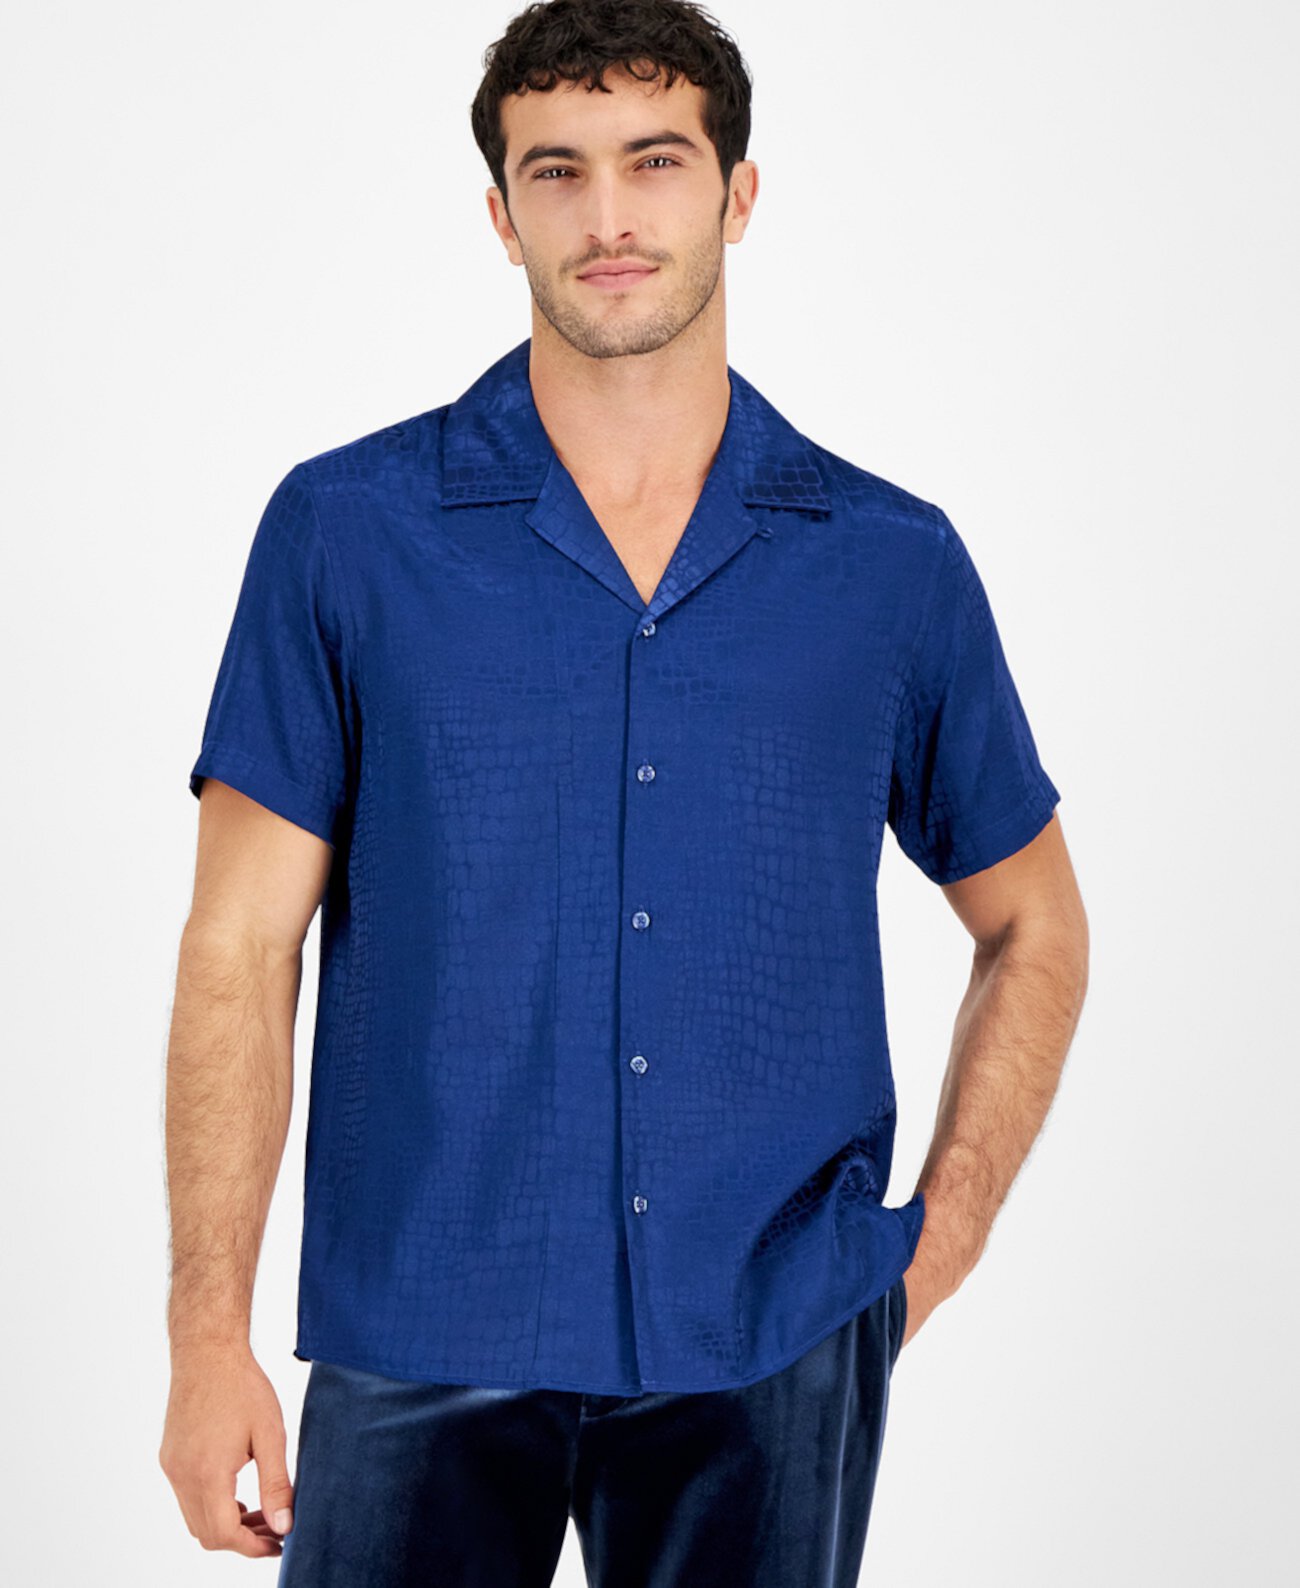 Мужская атласная рубашка из змеиной кожи с рукавами и пуговицами спереди, созданная для Macy's I.N.C. International Concepts